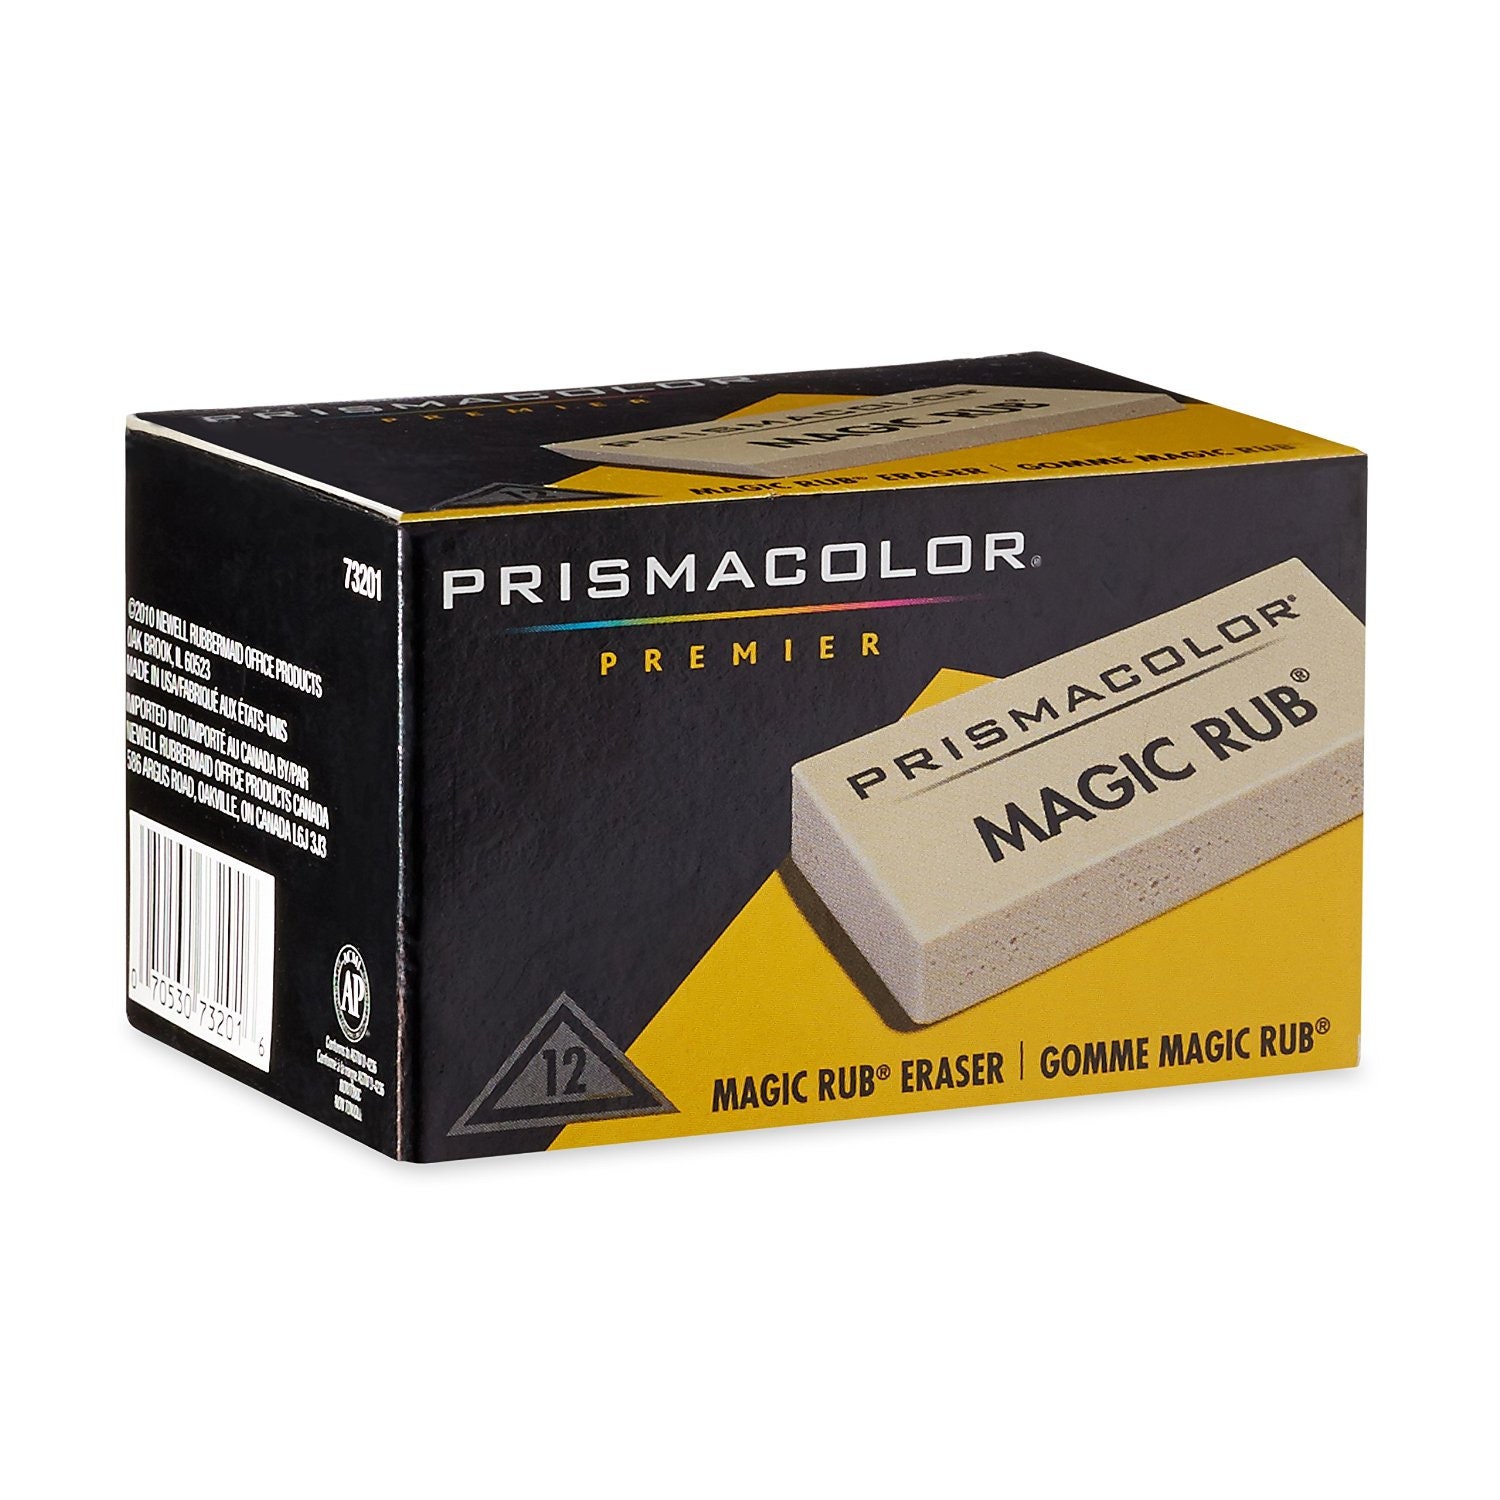 Prismacolor Premier Magic Rub Vinyl Erasers, 3-pack Premium Art Vinyl Eraser  -  Israel